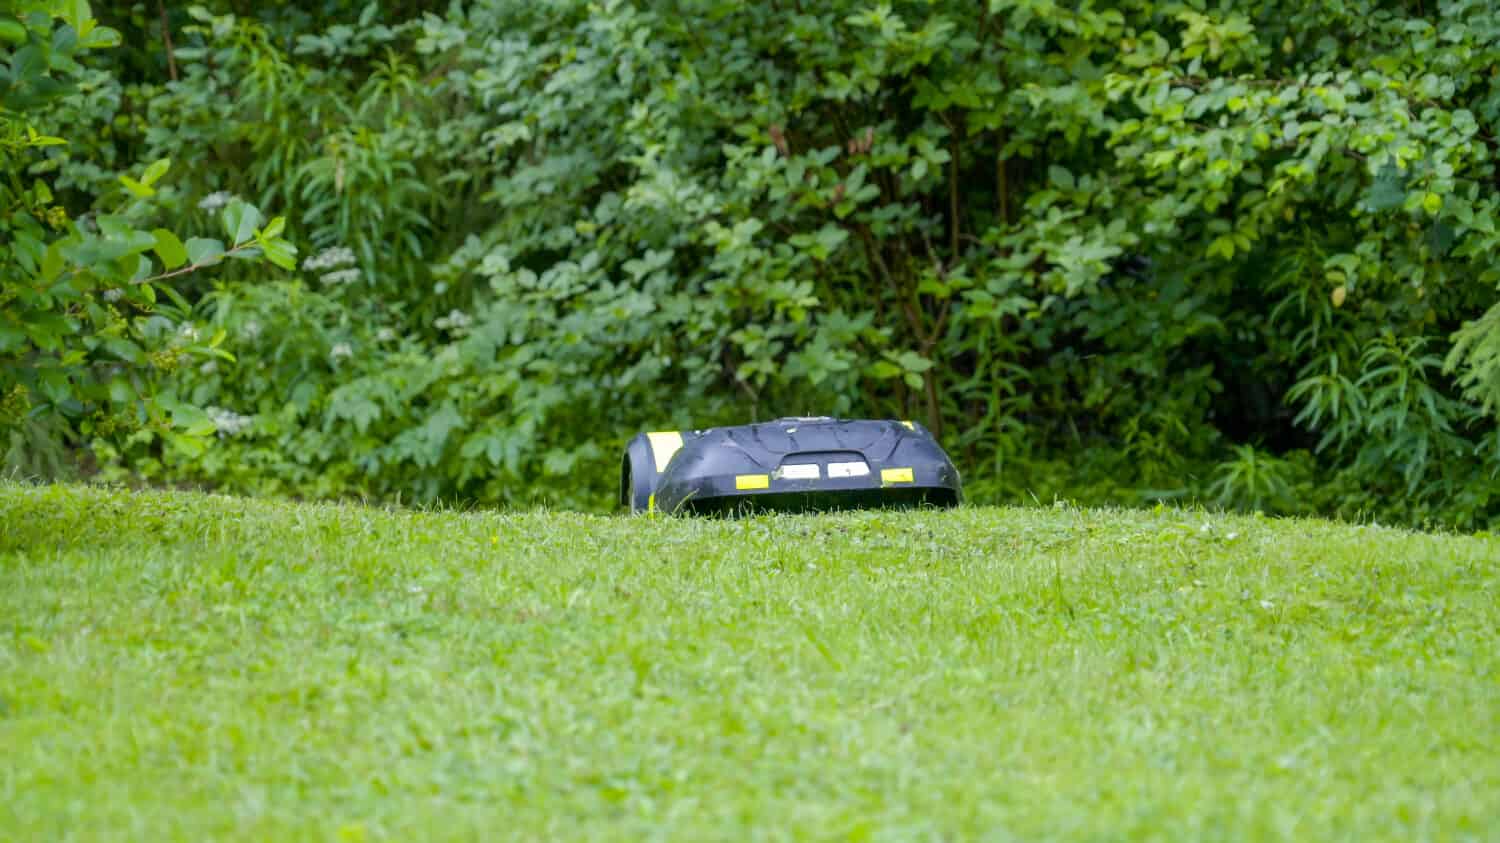 Un automower che si muove sull'erba verde.  Sembra una piccola macchina telecomandata